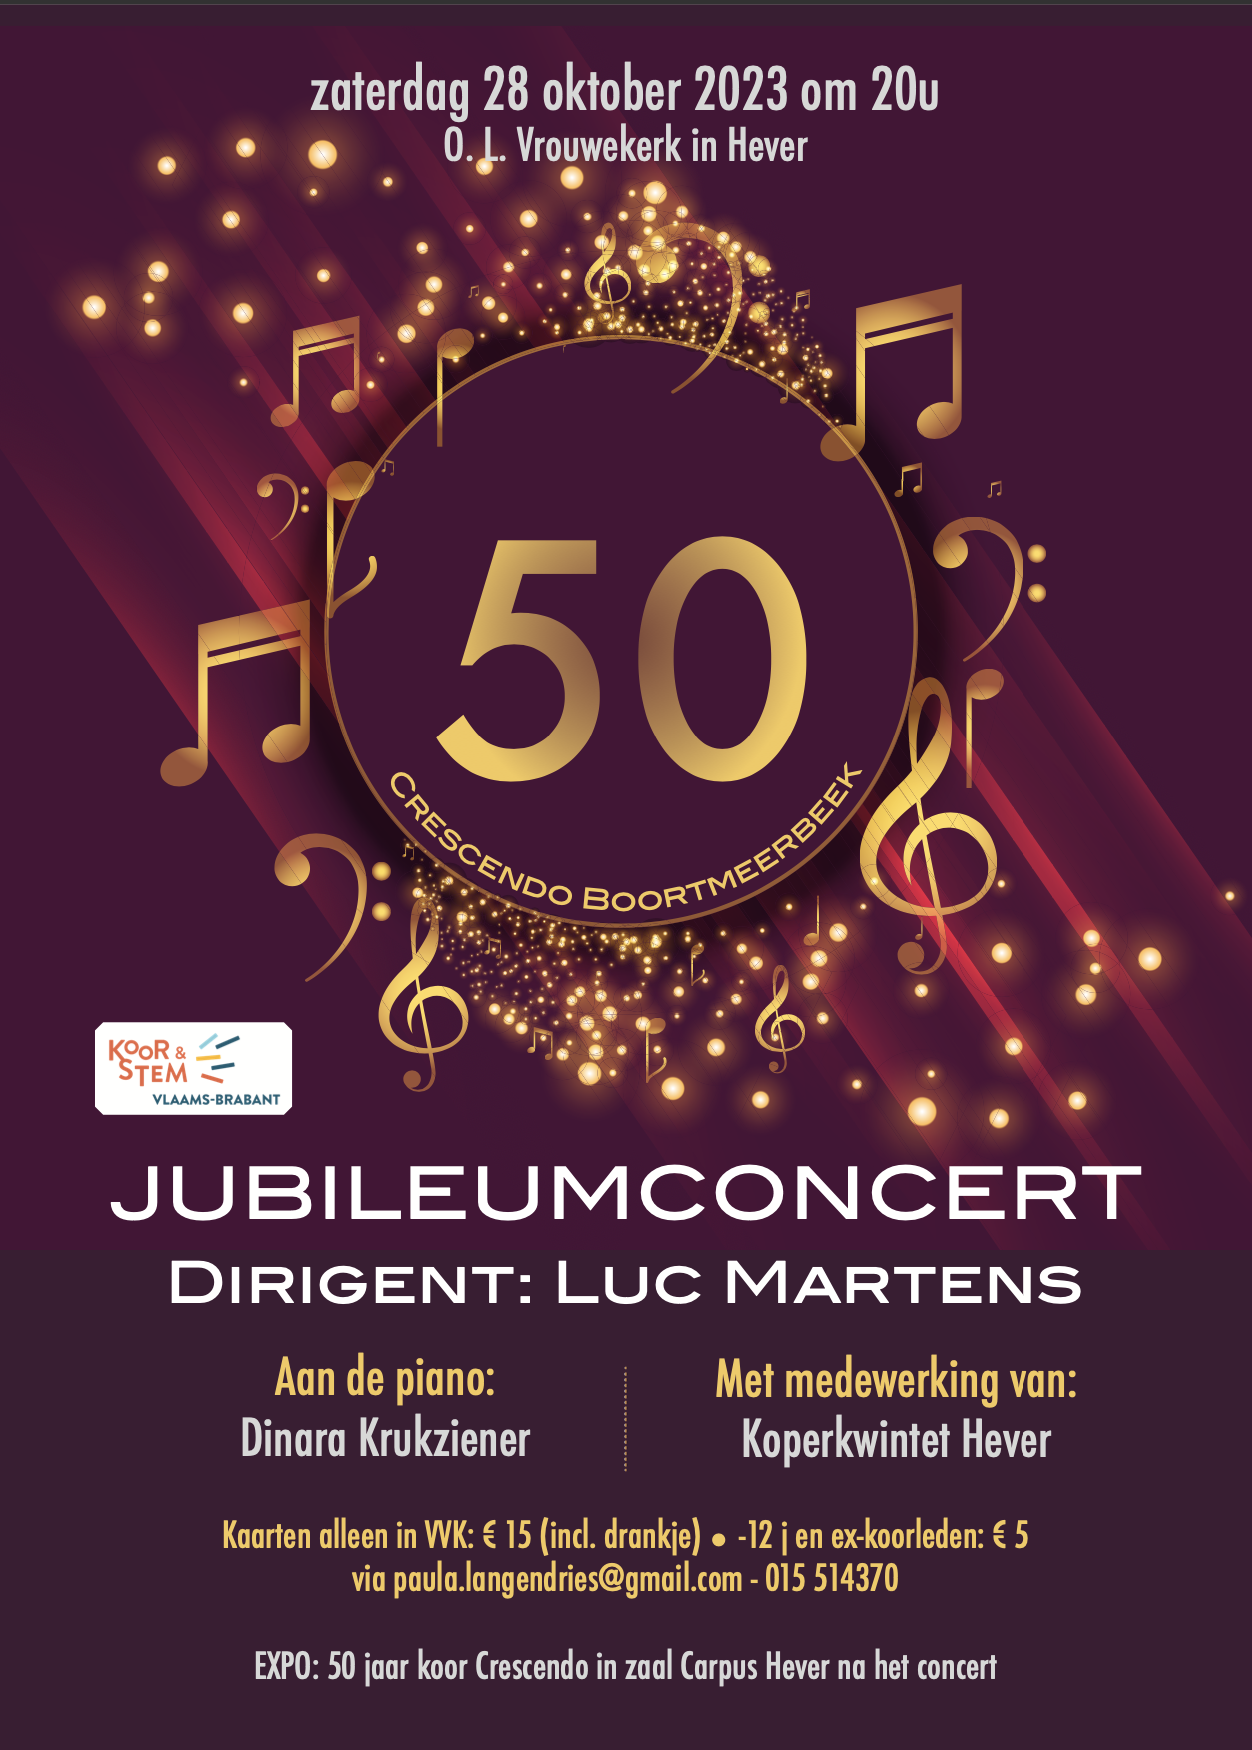 Concert 50 jaar Crescendo